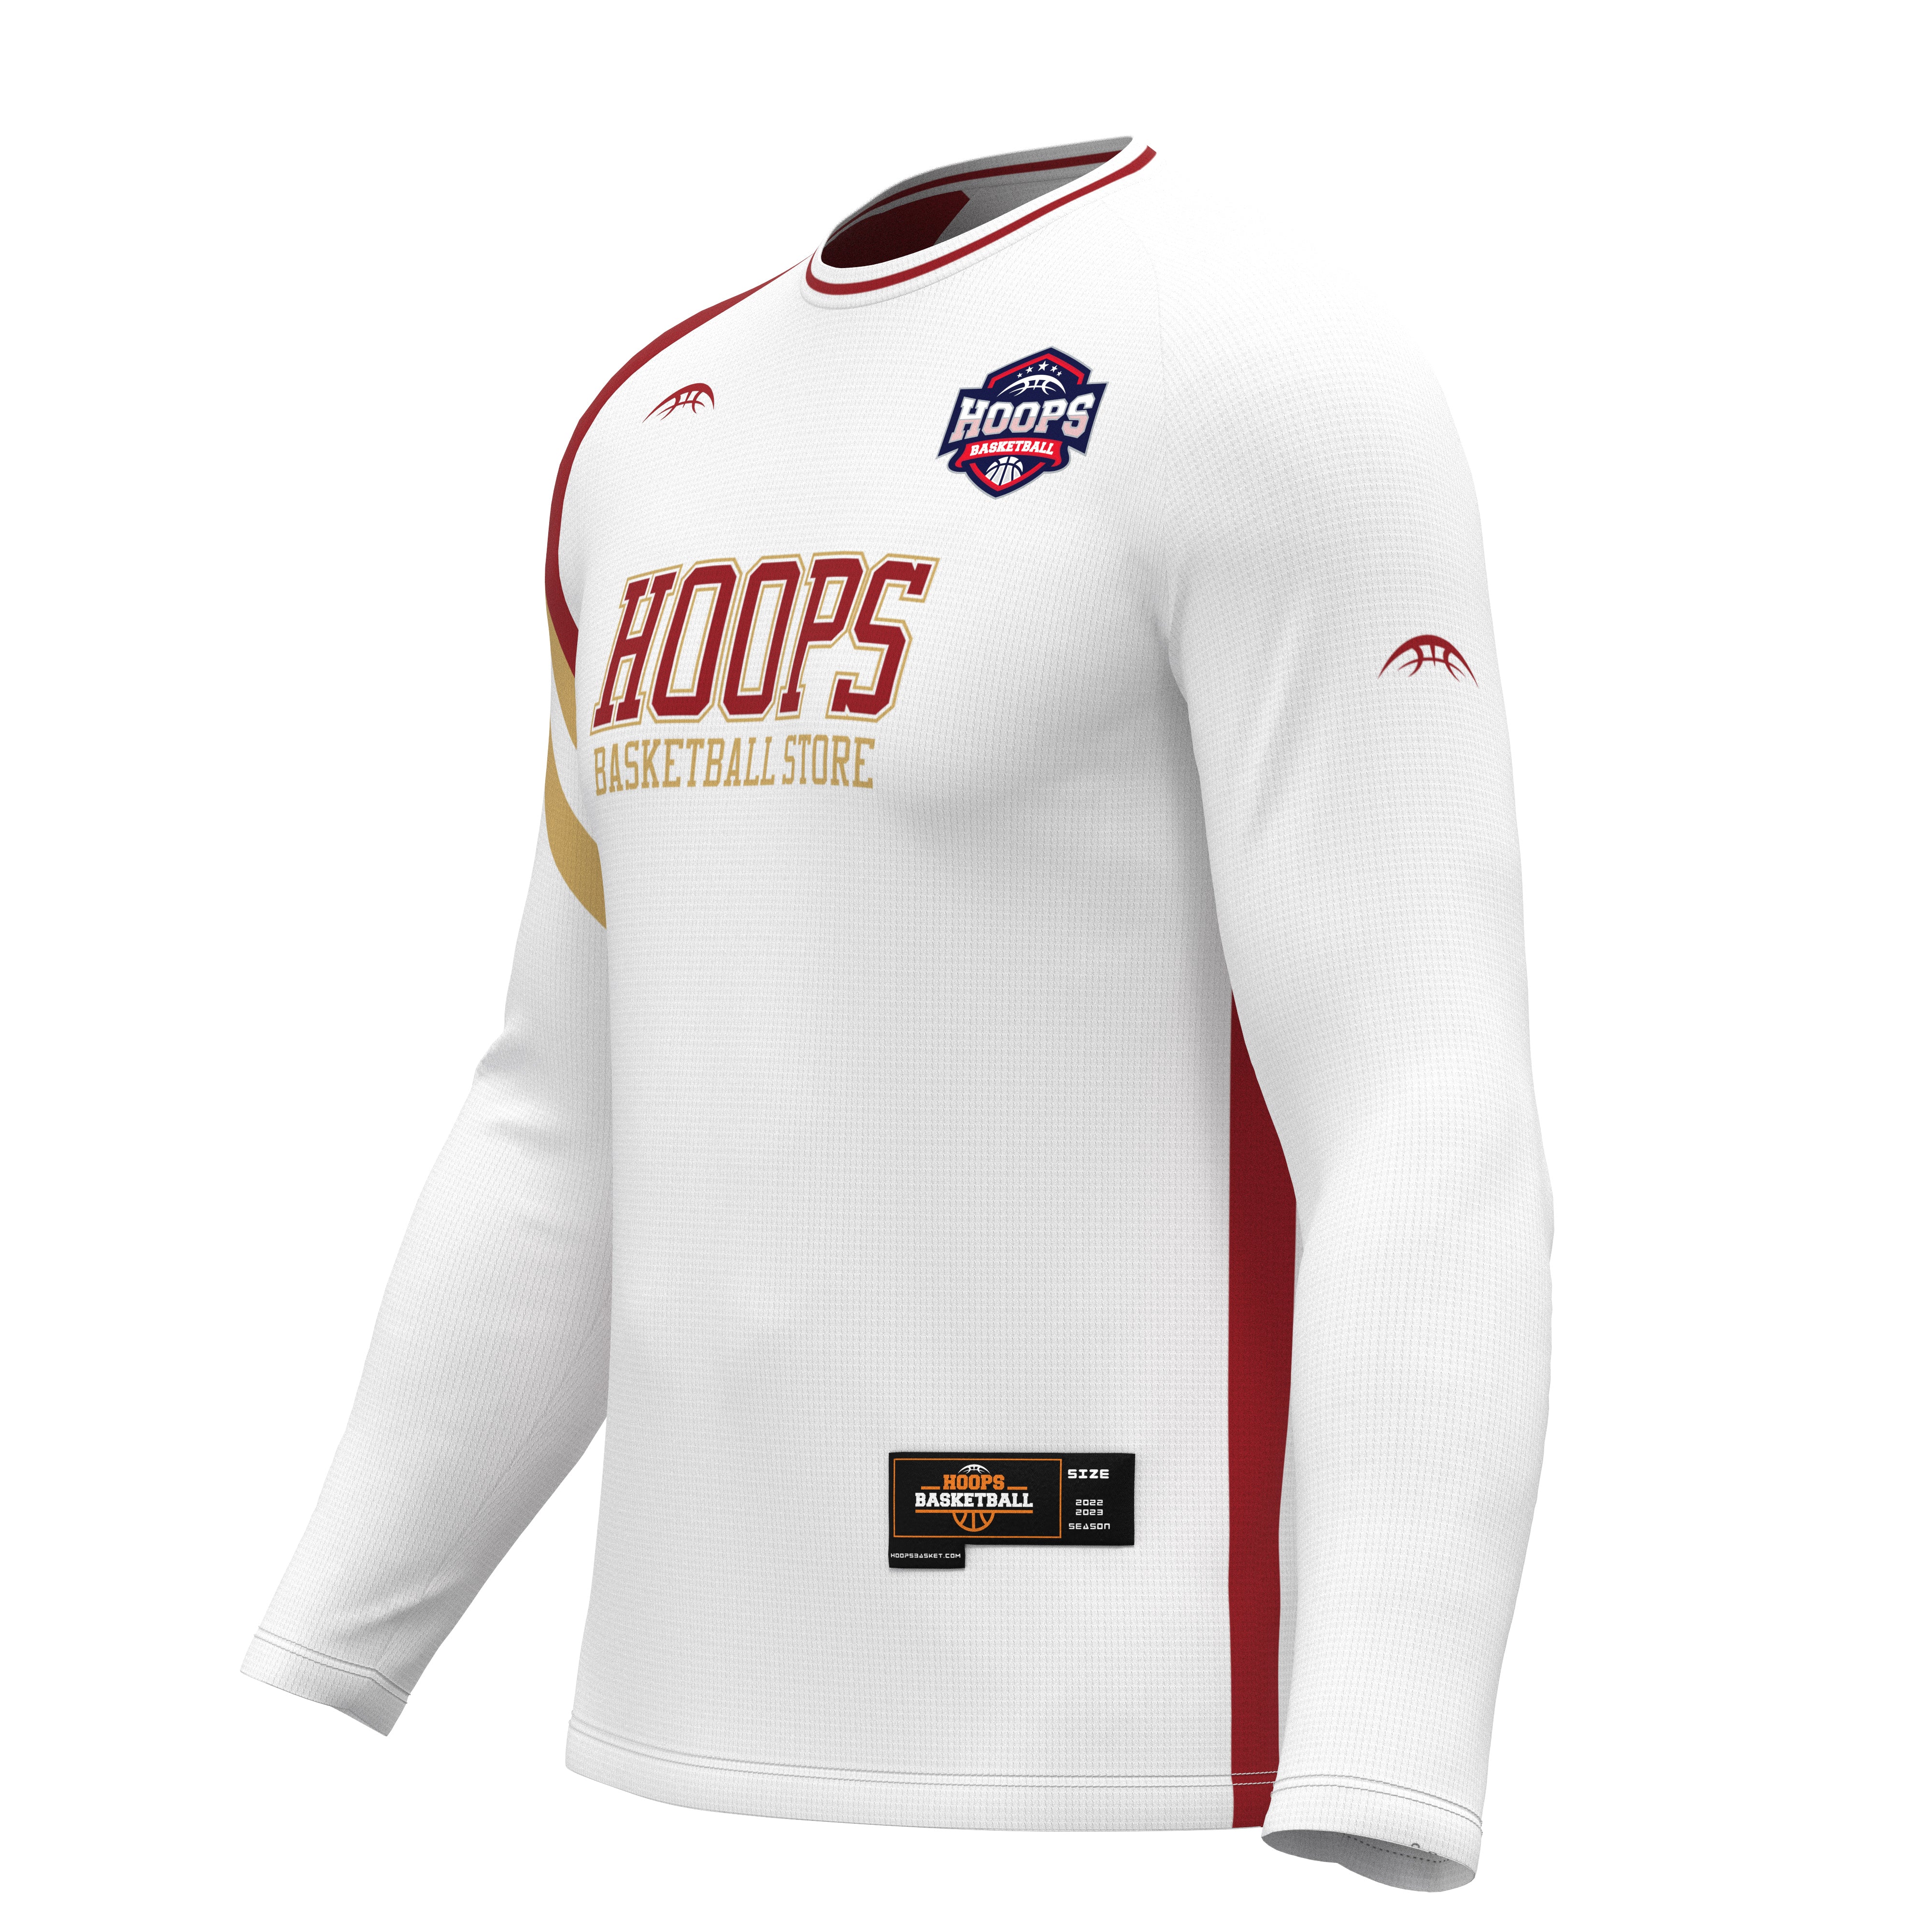 Custom Basketball Shooting Shirts & Warm Up Tops